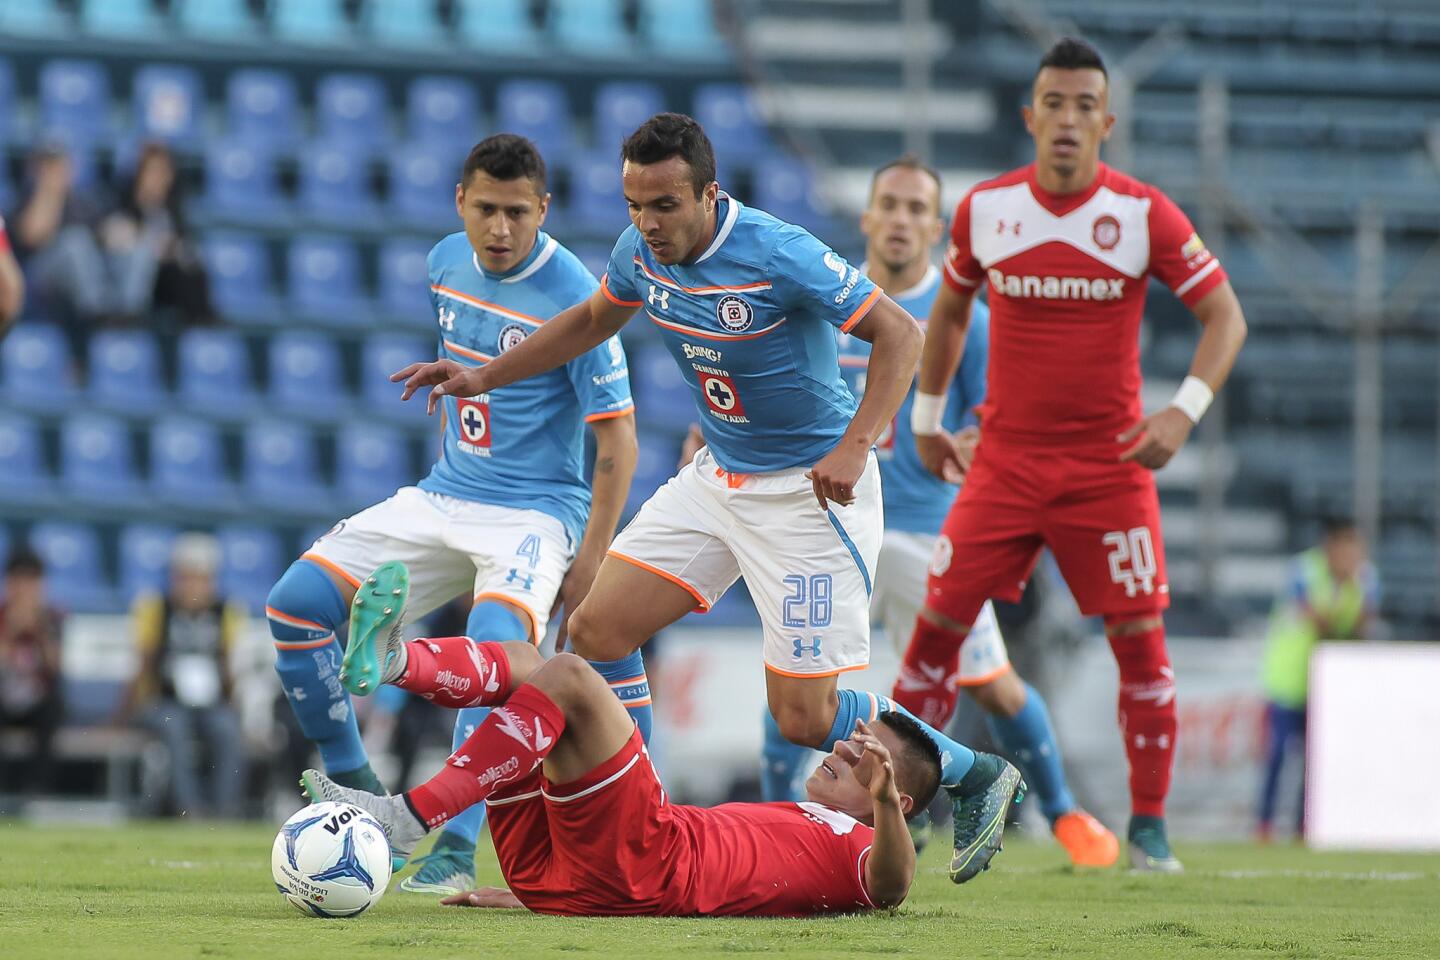 Cruz Azul 1-2 Toluca